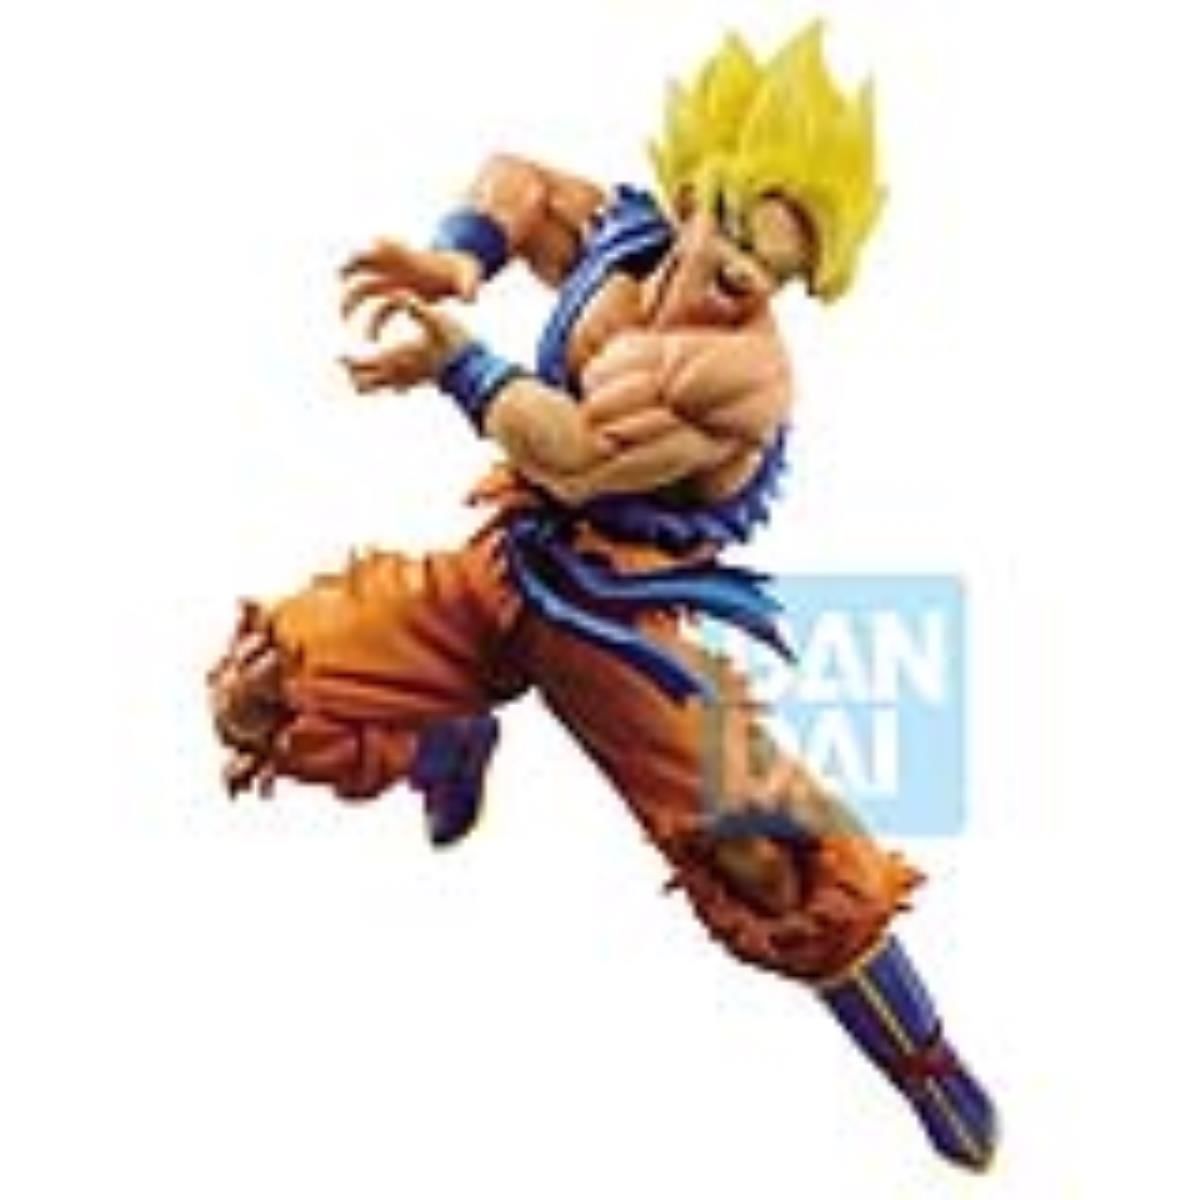 Dragon Ball Super Super Saiyan Son Goku Z-Battle Figure